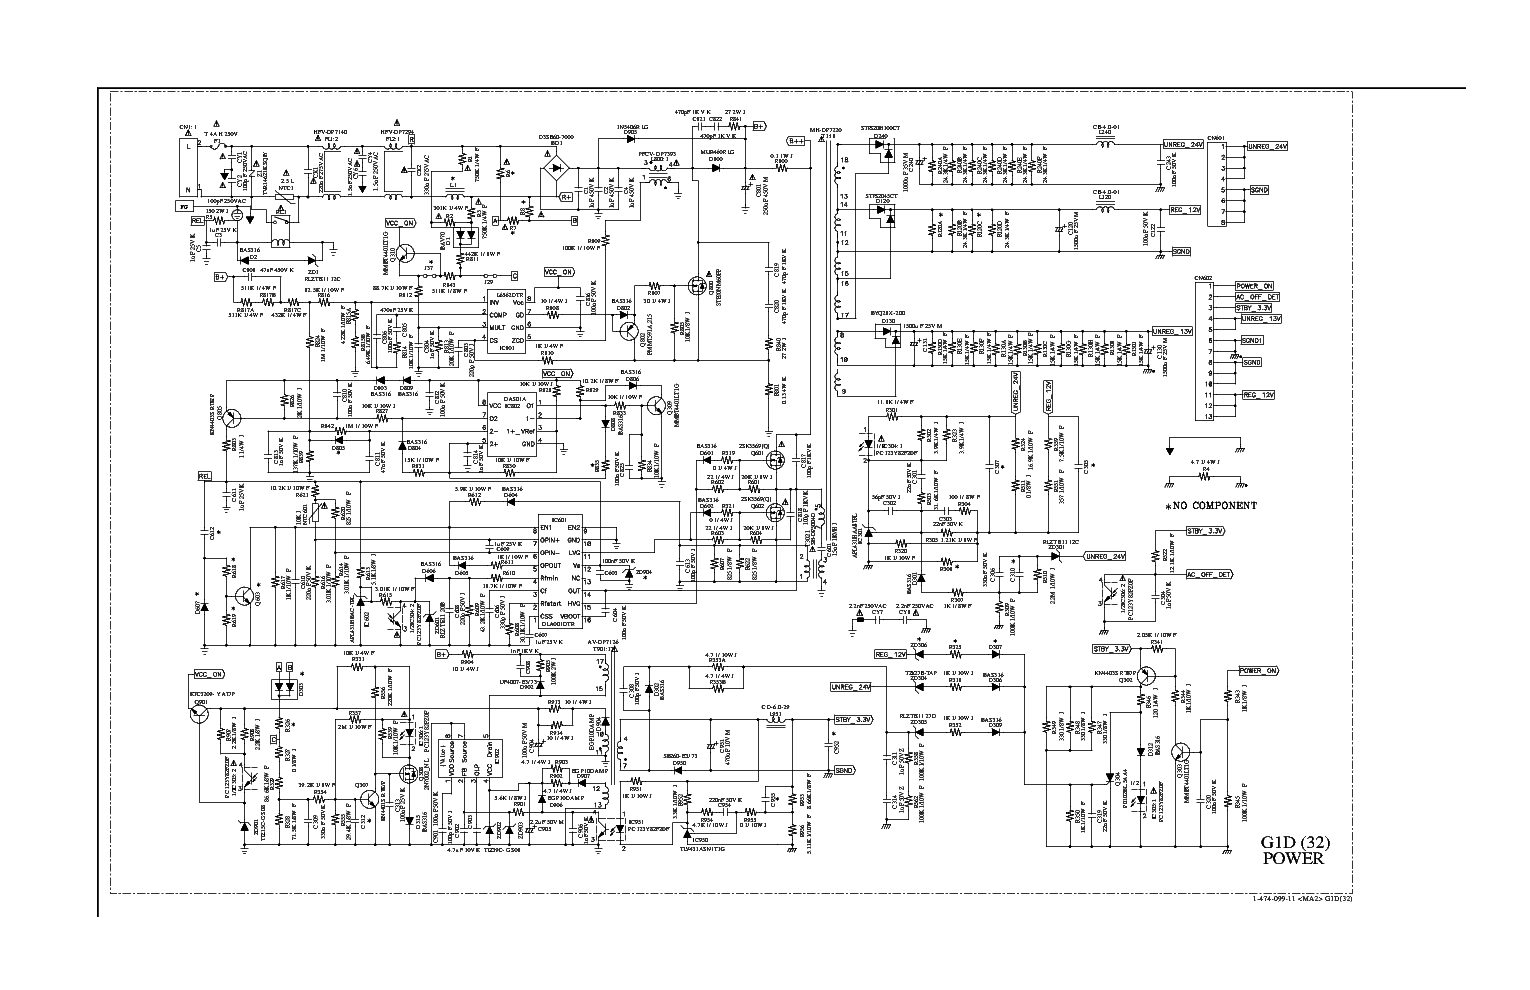 300w power supply model dps-300pb-3a wiring diagram